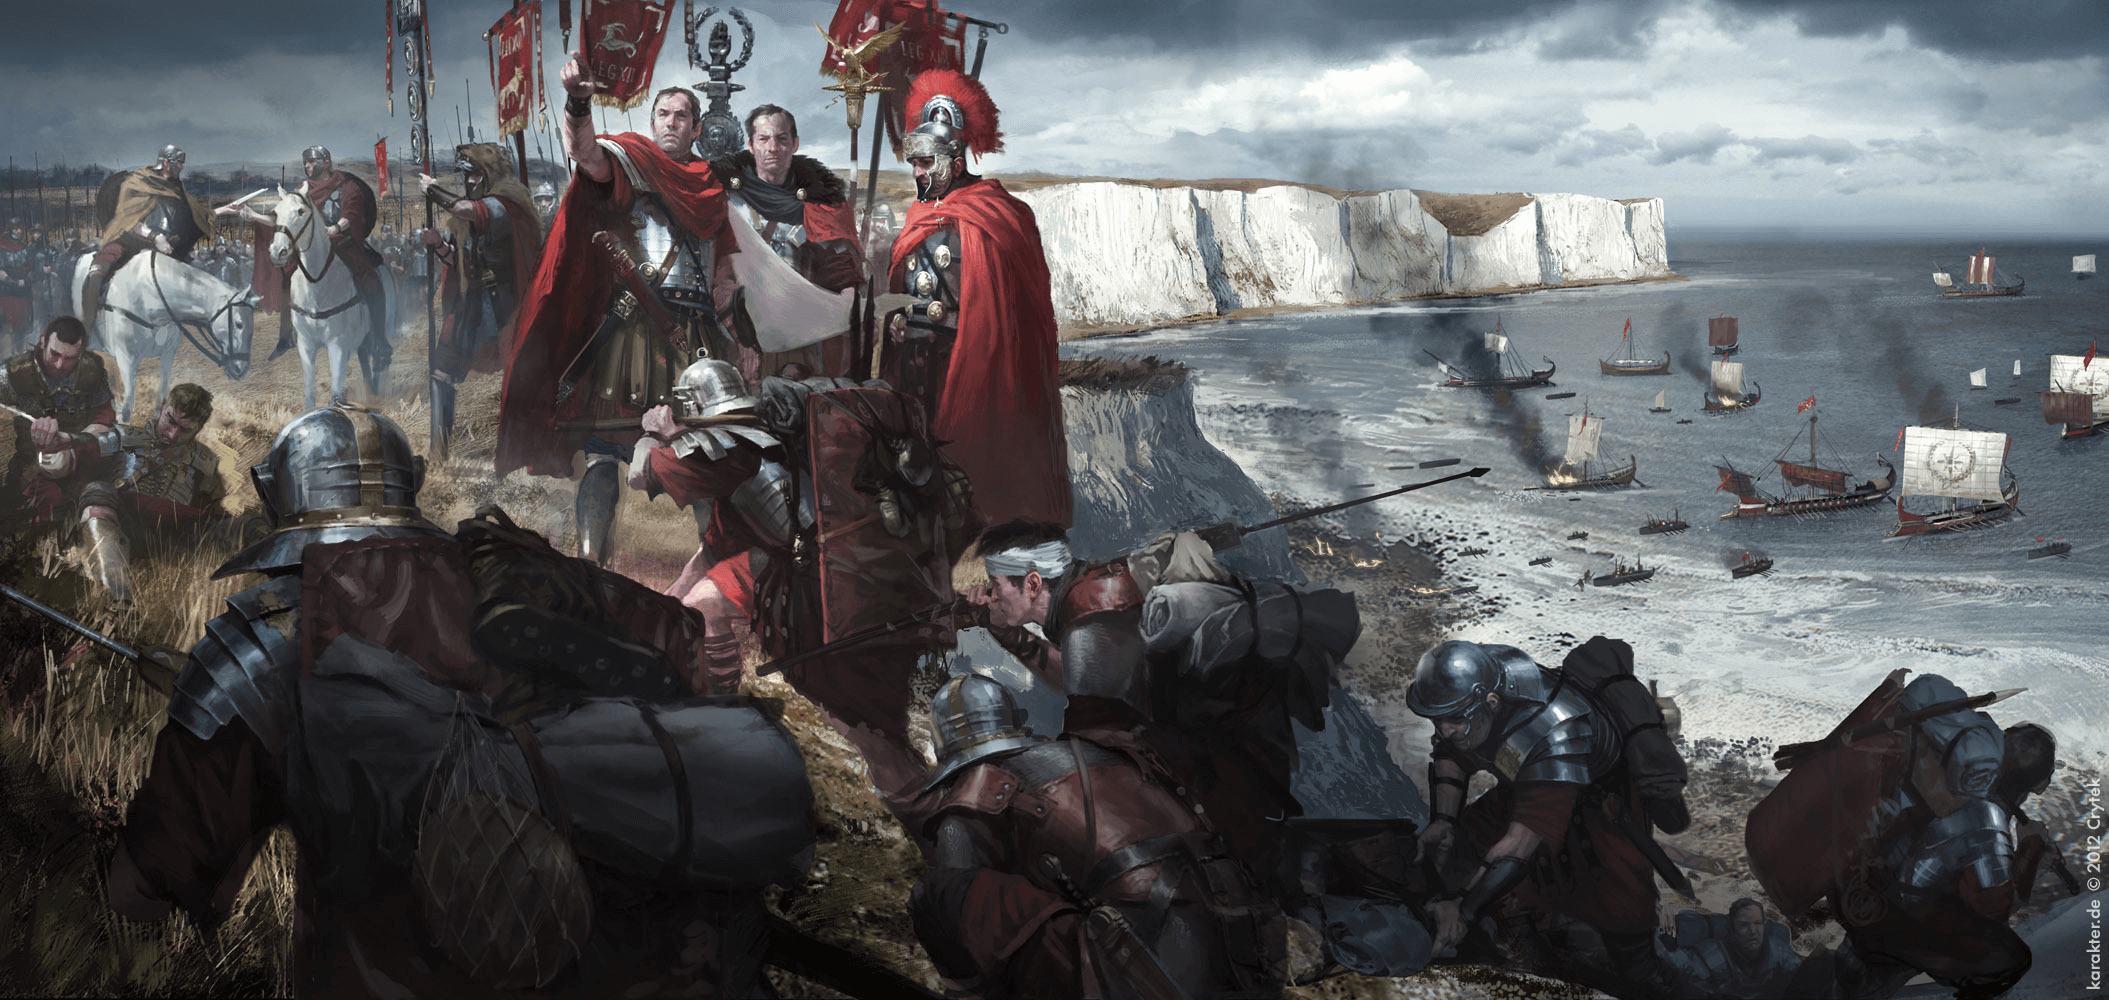 Desembarco de Claudio en Britania año 43, los romanos ocupan la costa 